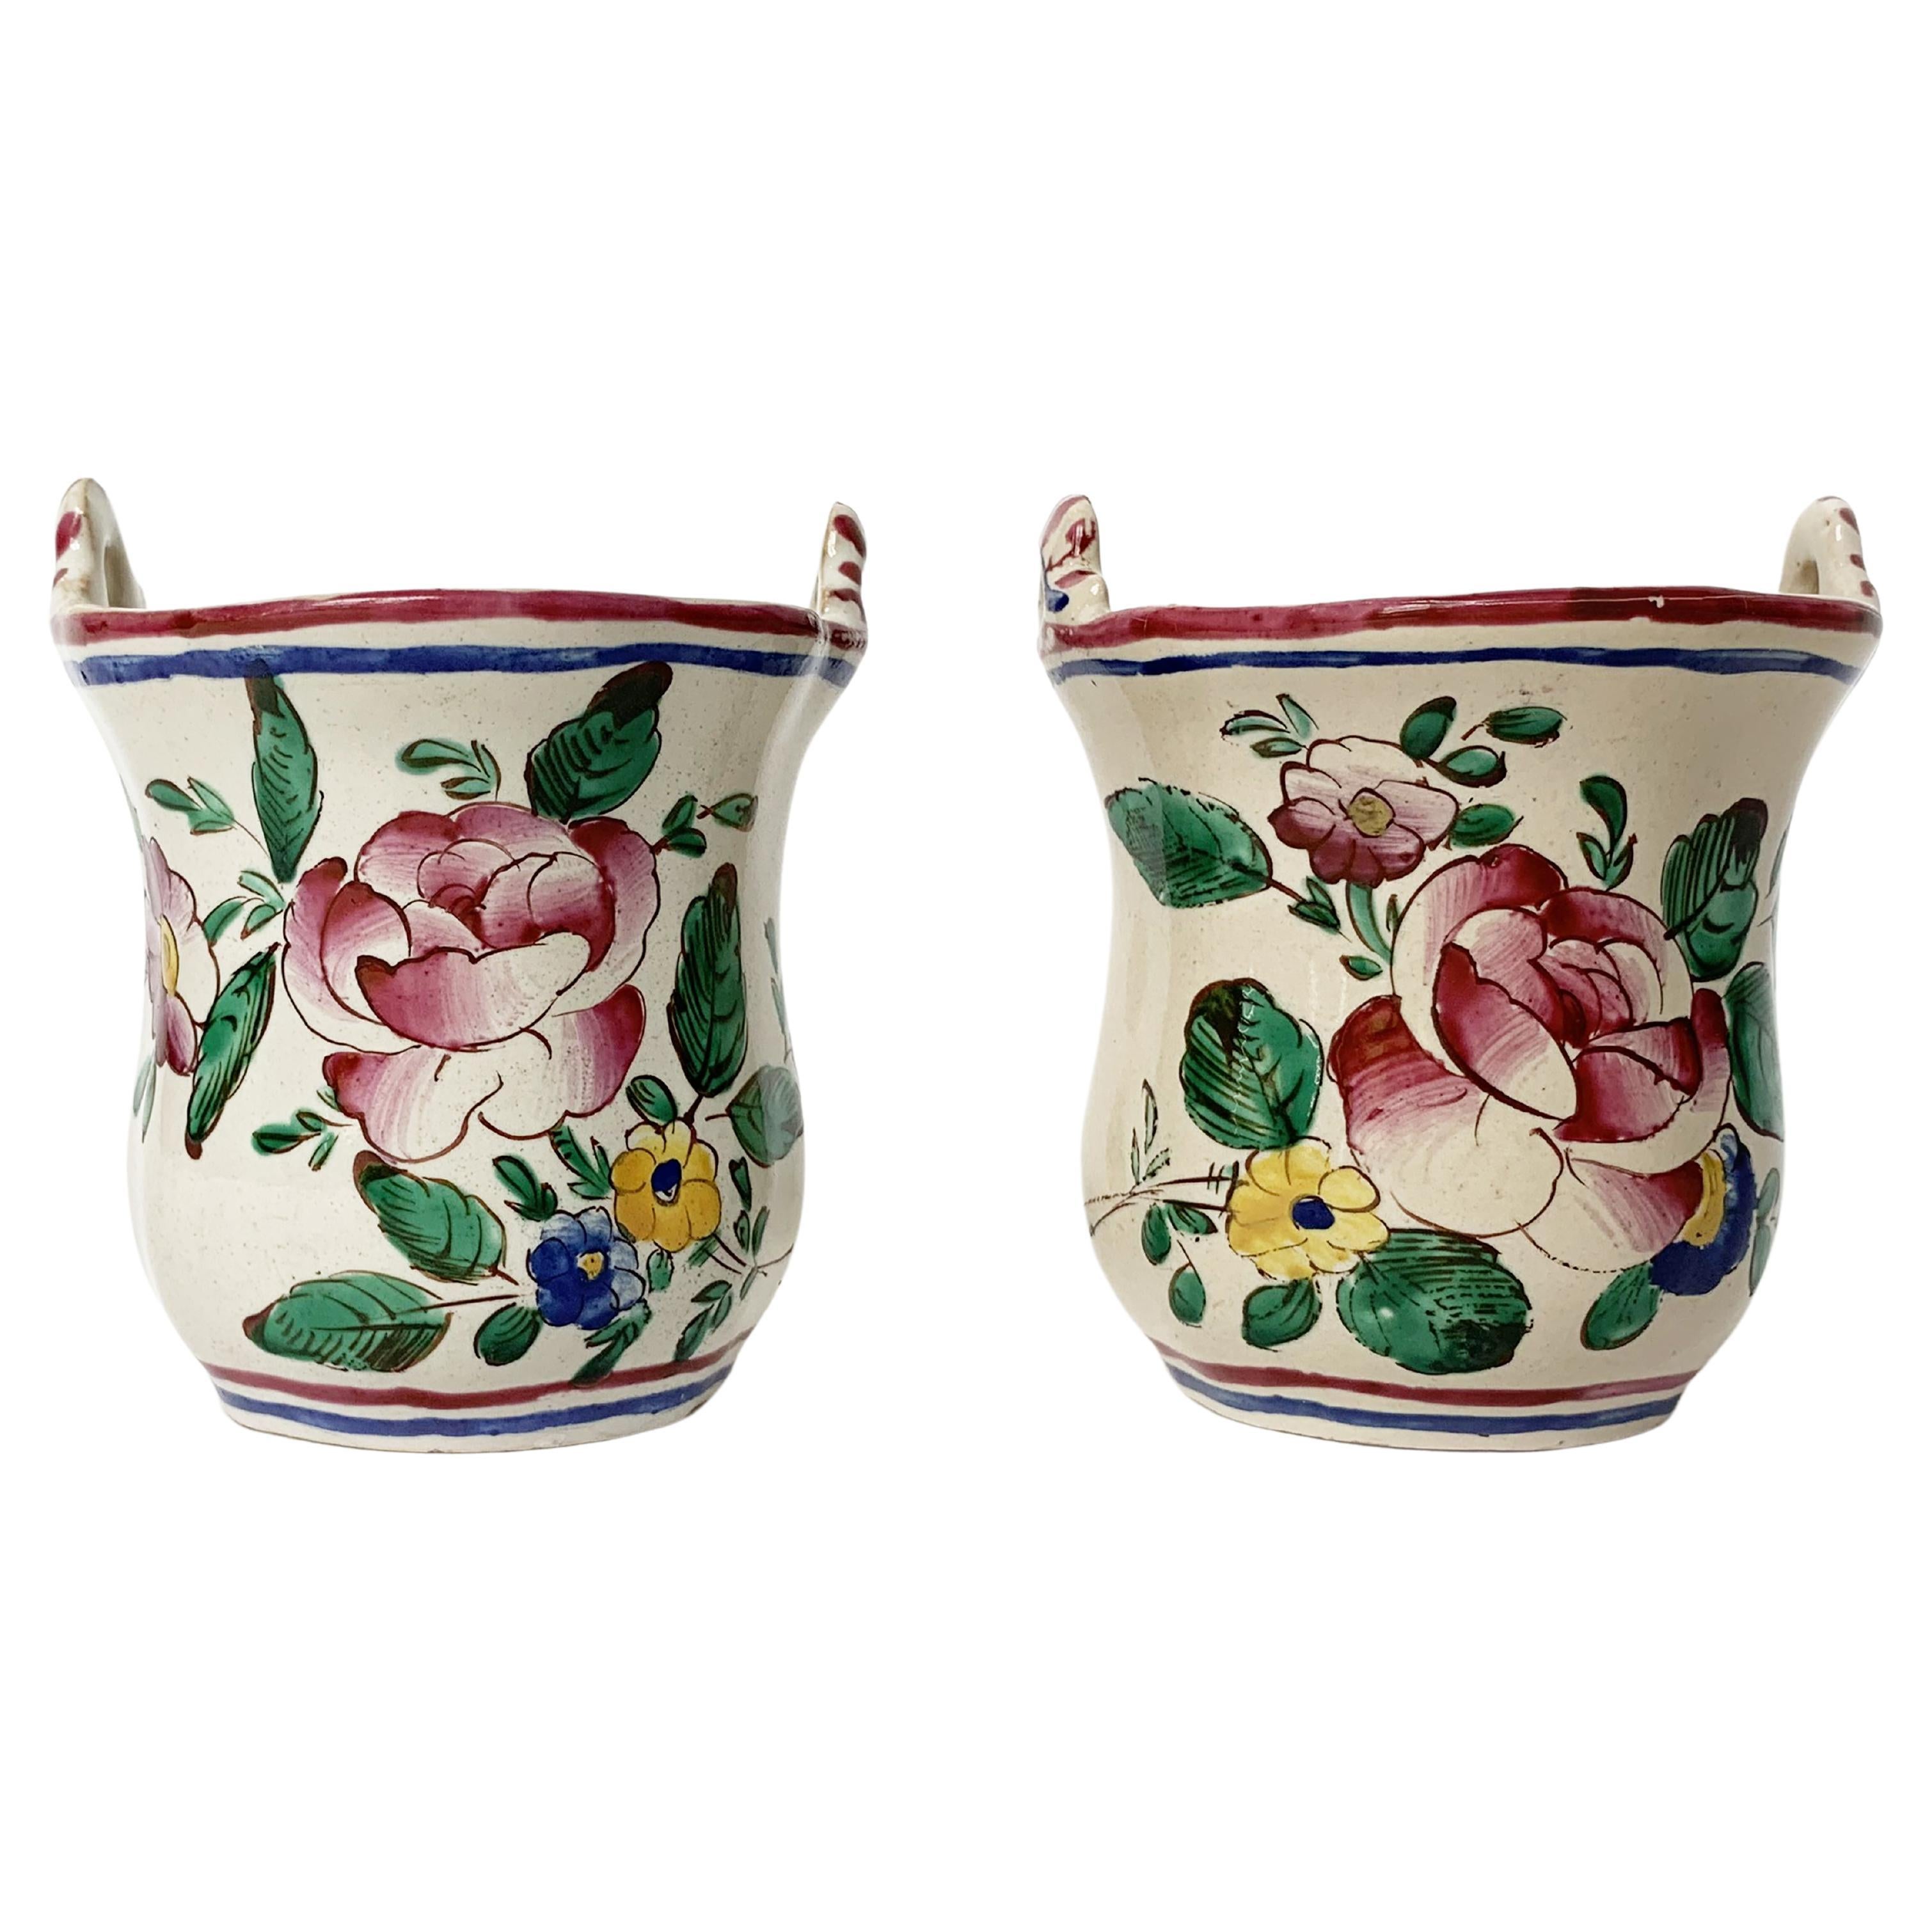 Petits pots de fleurs en maïolique, manufacture CIRCA, Lodi, vers 1770-1780